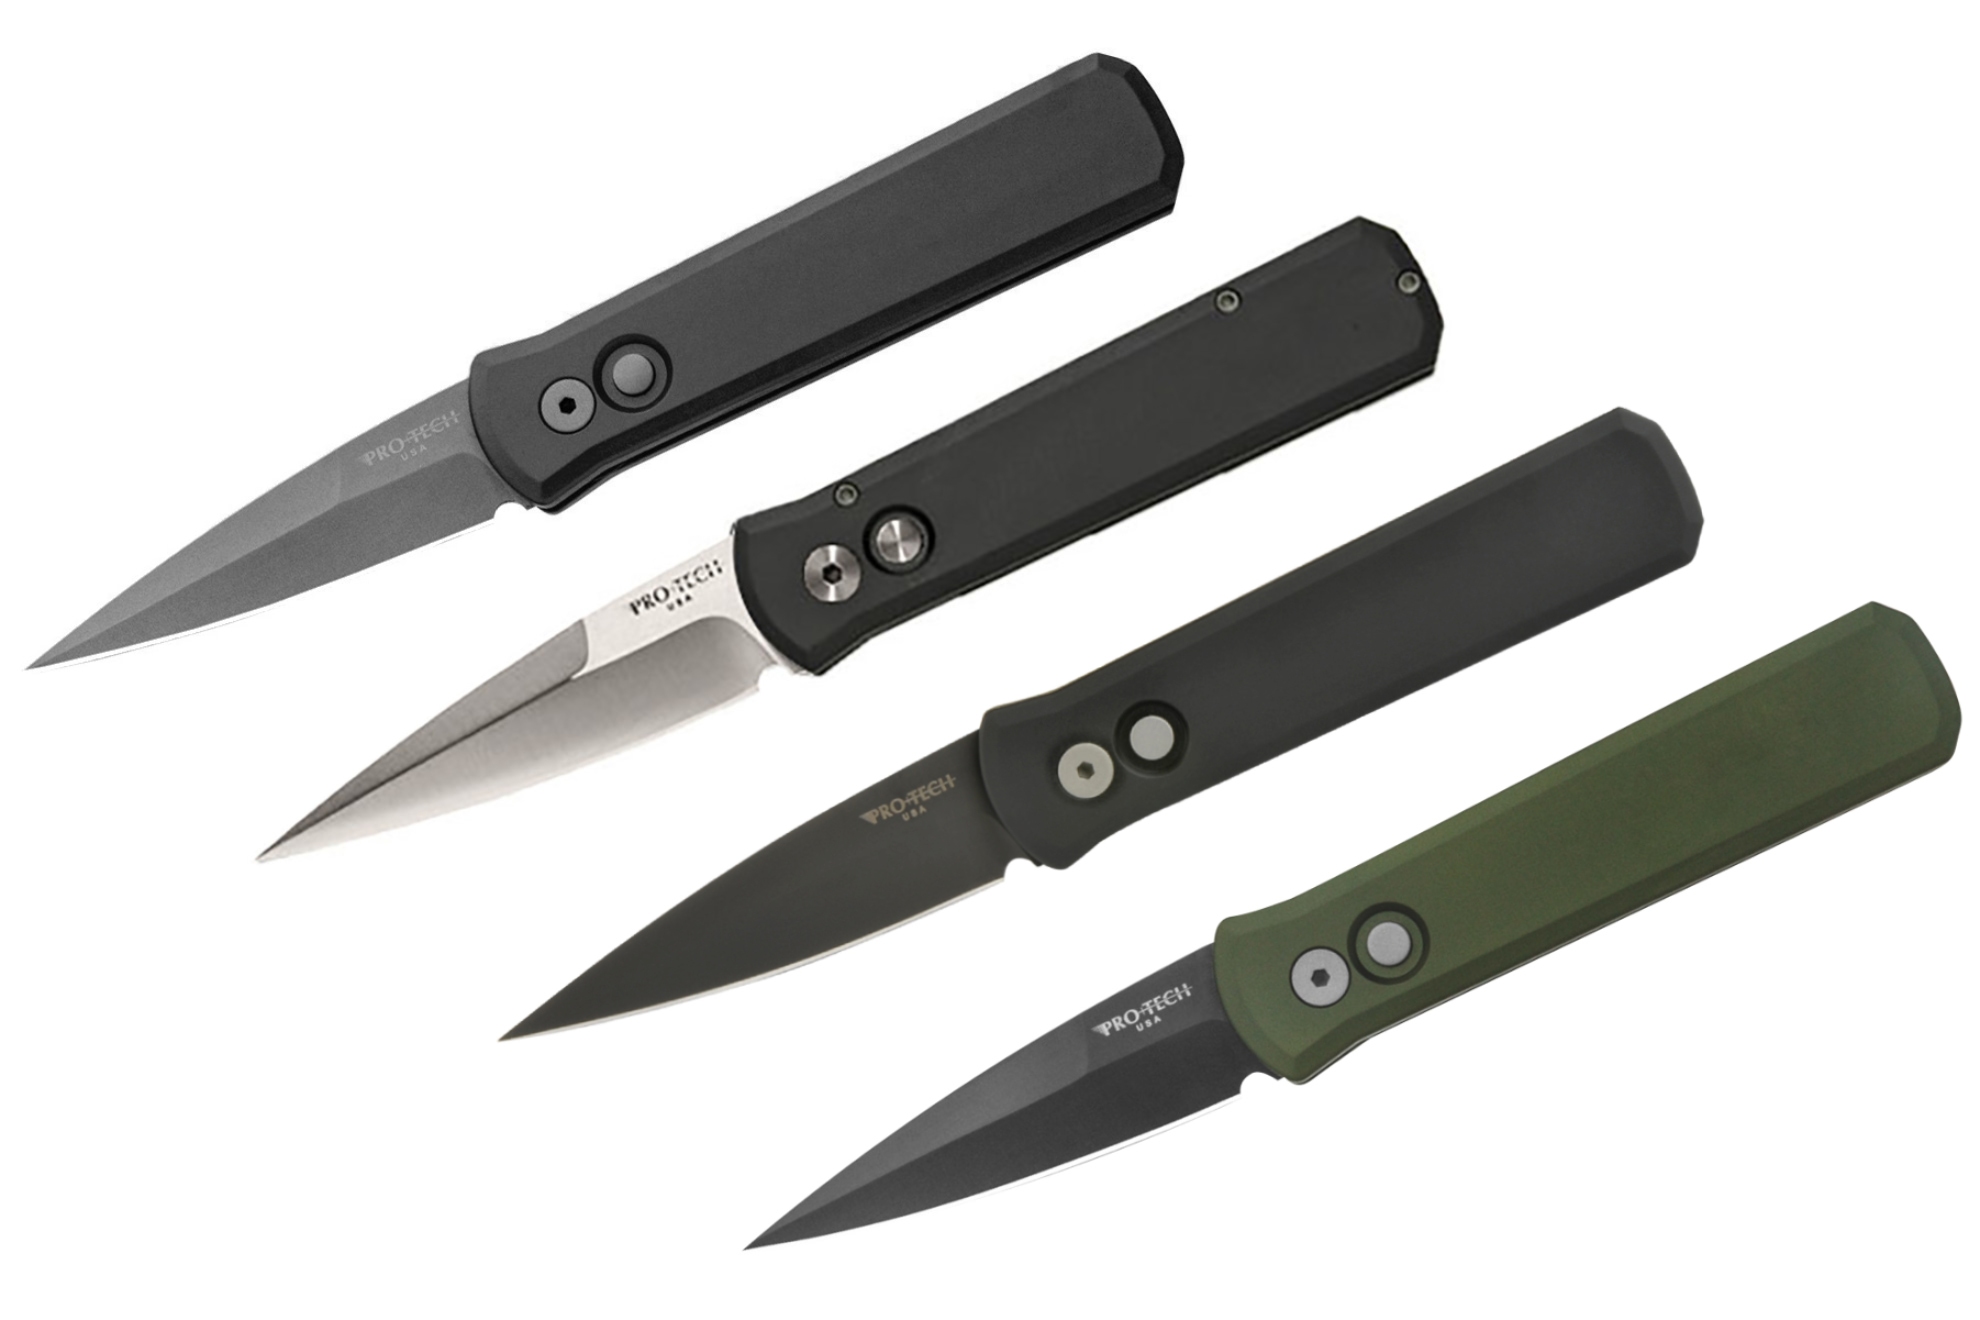 Автоматический нож «Godson» Pro-Tech 720/721 - тактический городской нож на каждый день. Порошковая сталь + DLC покрытие.